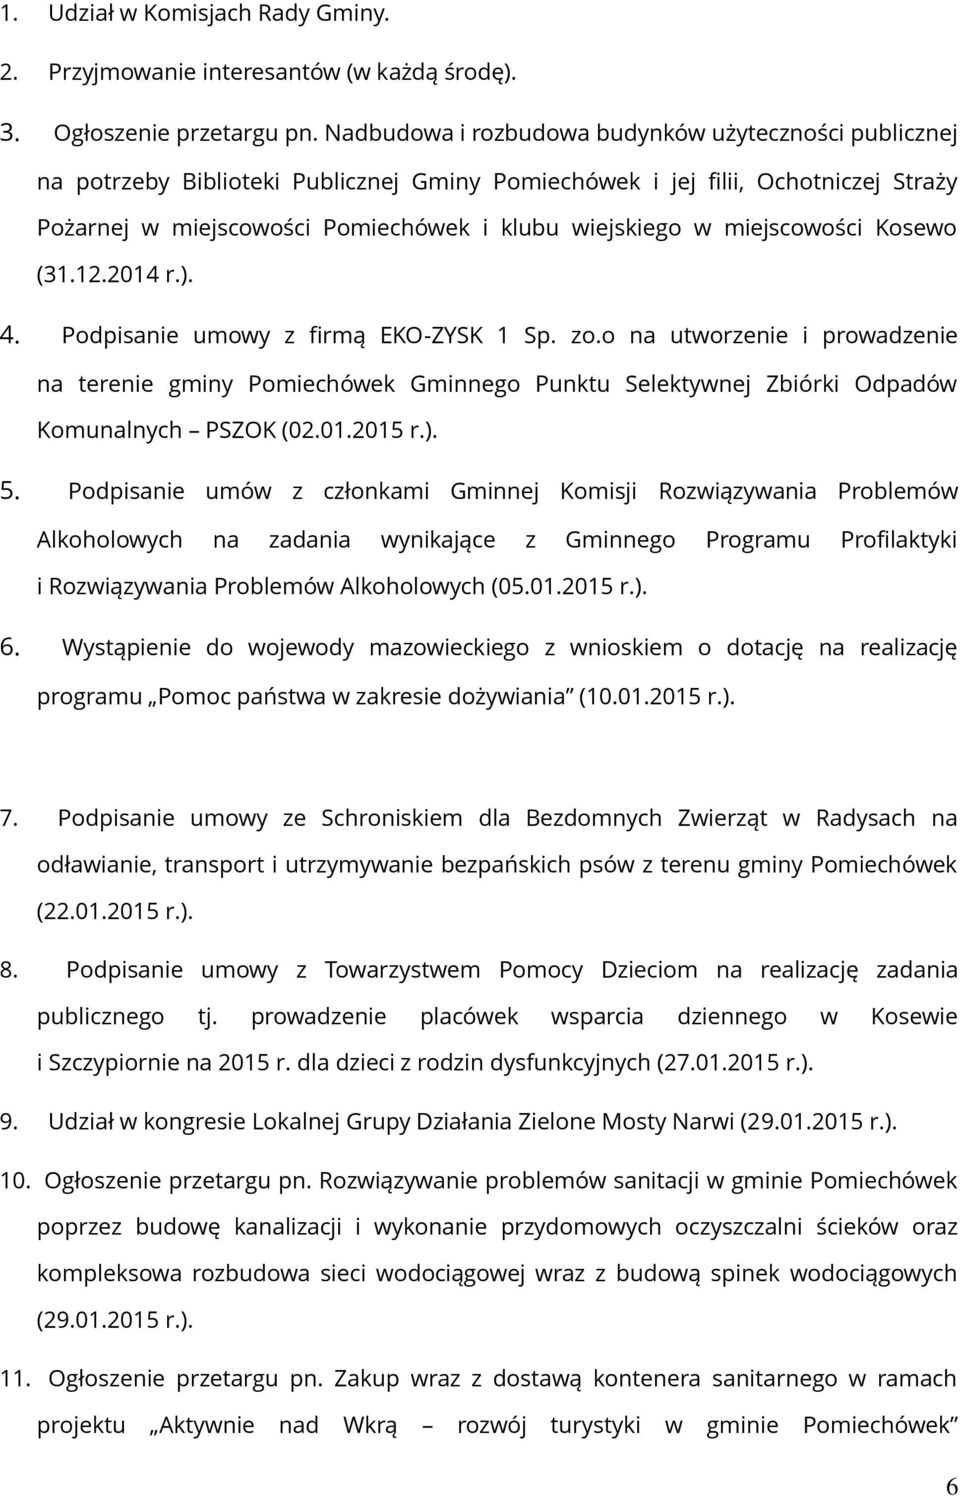 miejscowości Kosewo (31.12.2014 r.). 4. Podpisanie umowy z firmą EKO-ZYSK 1 Sp. zo.